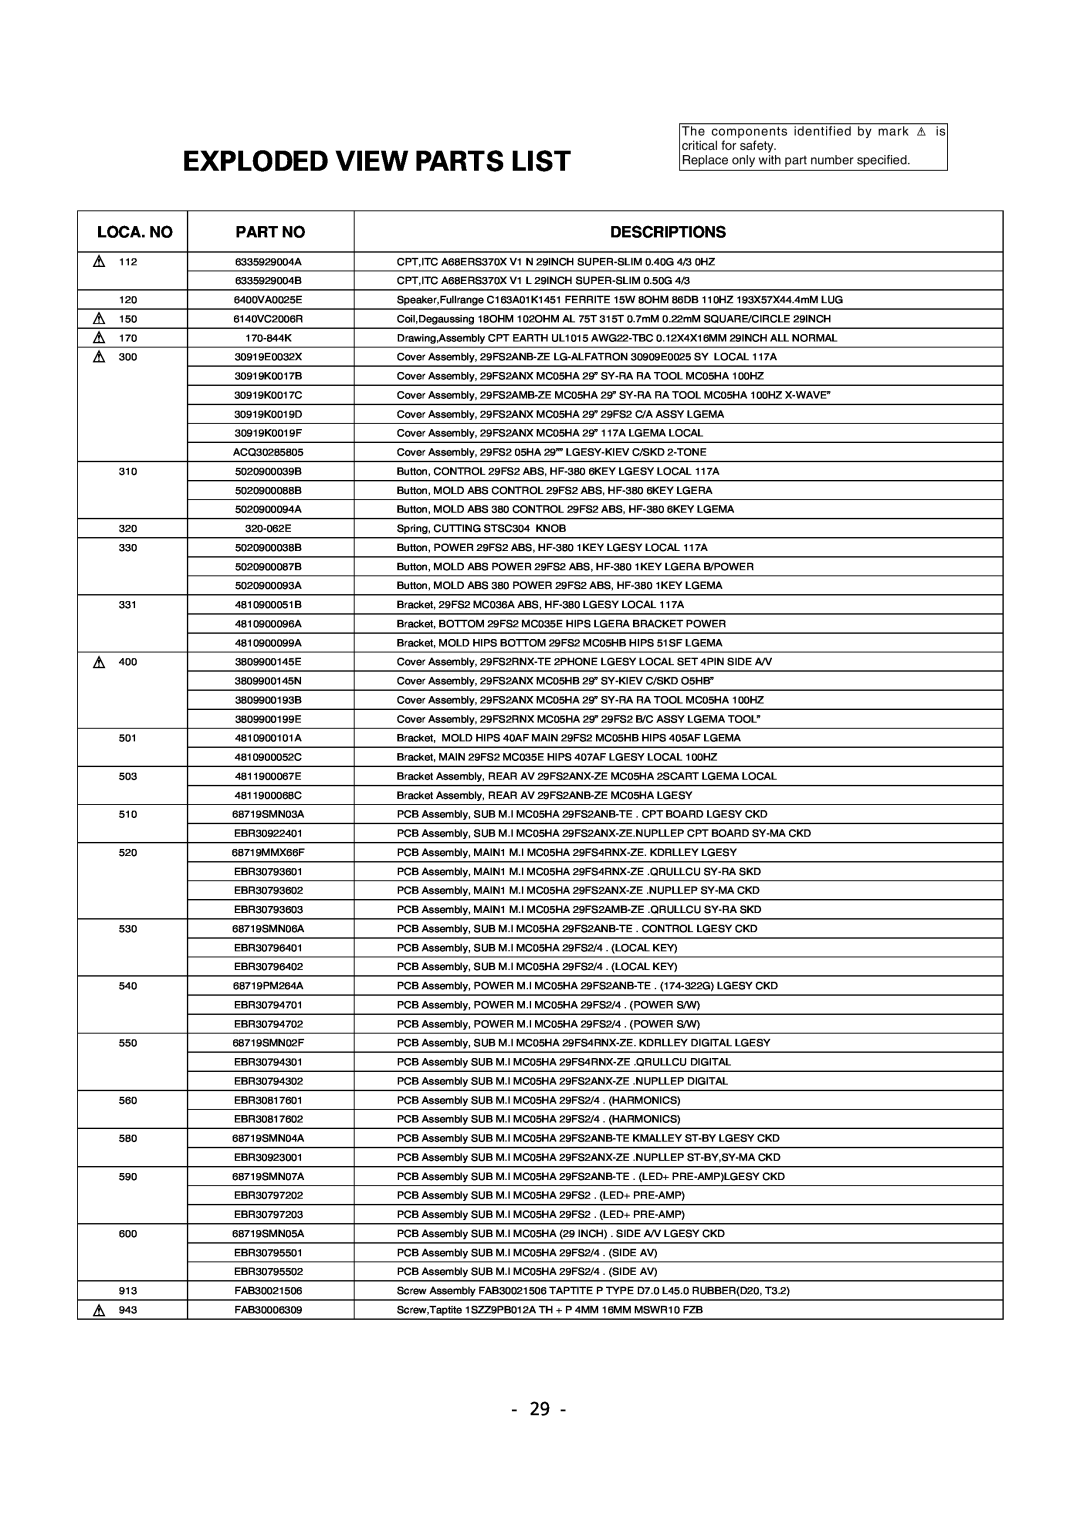 LG Electronics 29FS2AMB/ANX-ZE service manual Exploded View Parts List, Loca. No, Descriptions 